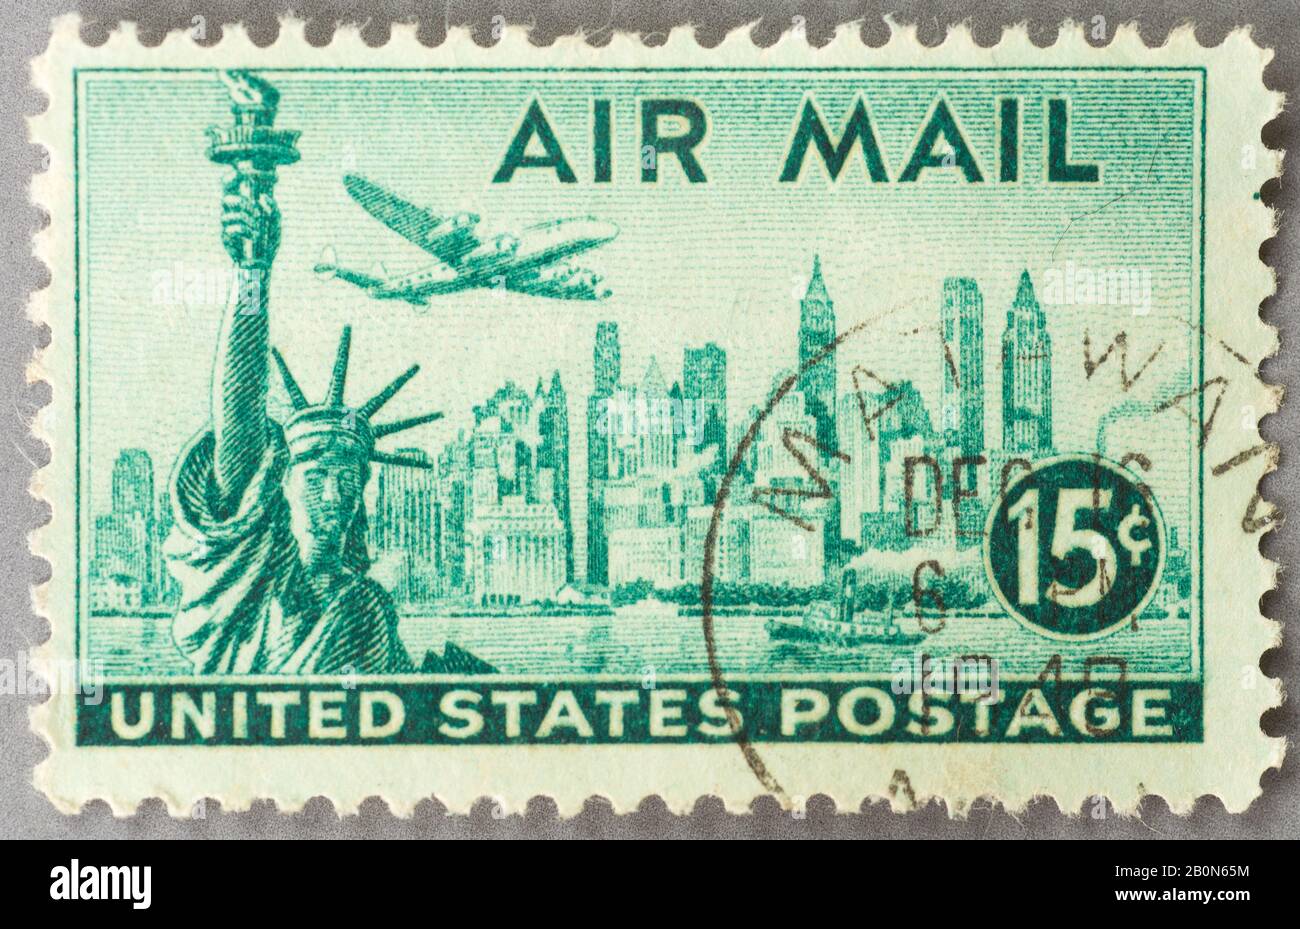 Airmail stamps immagini e fotografie stock ad alta risoluzione - Alamy